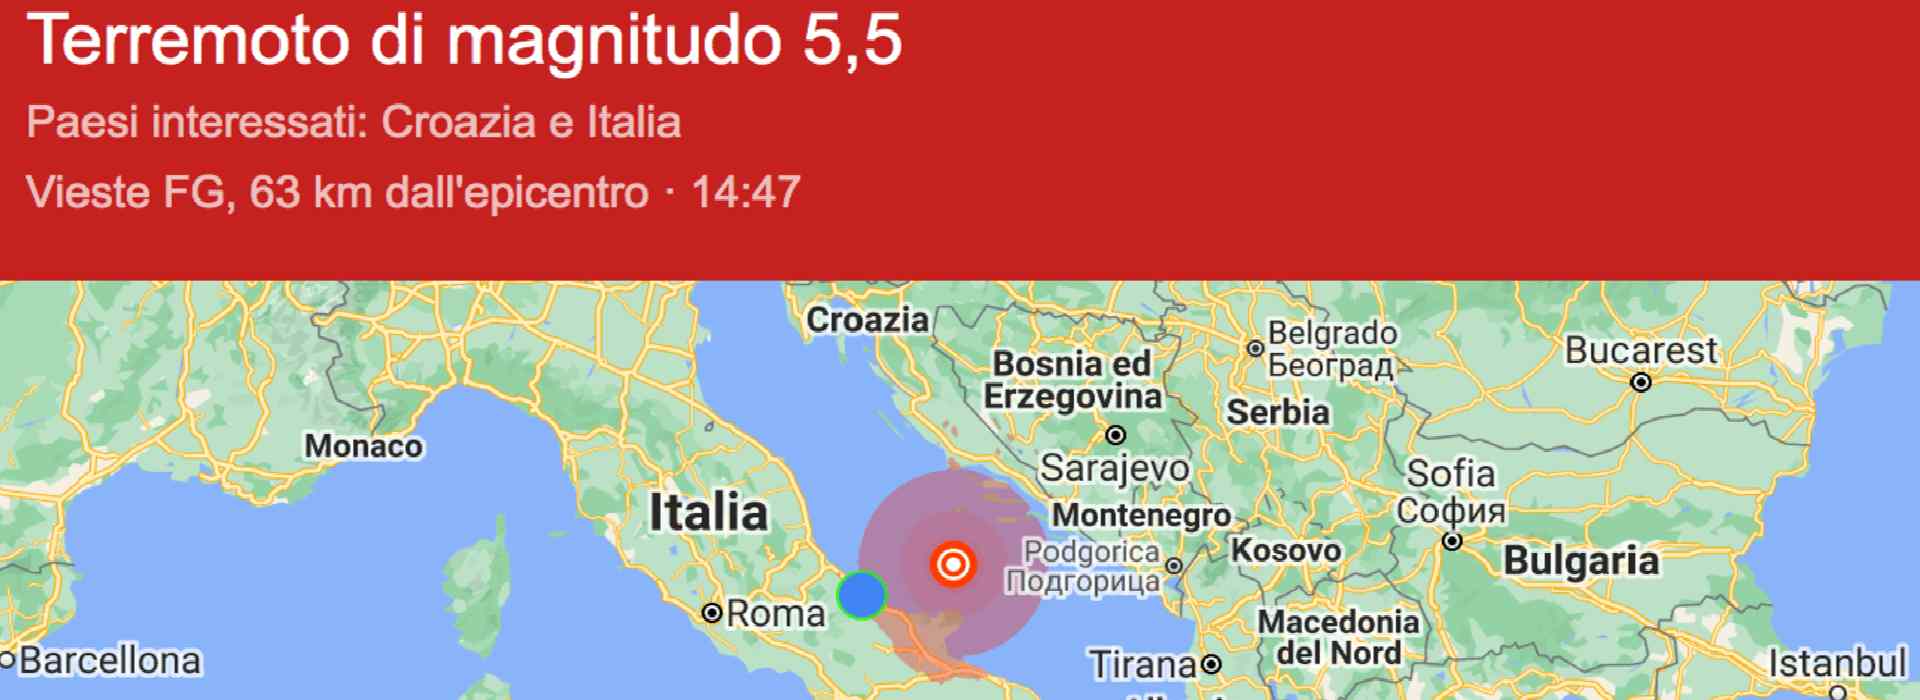 Terremoto di 5.5 e 4.1 nel mare Adriatico. Scosse avvertite in Abruzzo, Molise e Puglia